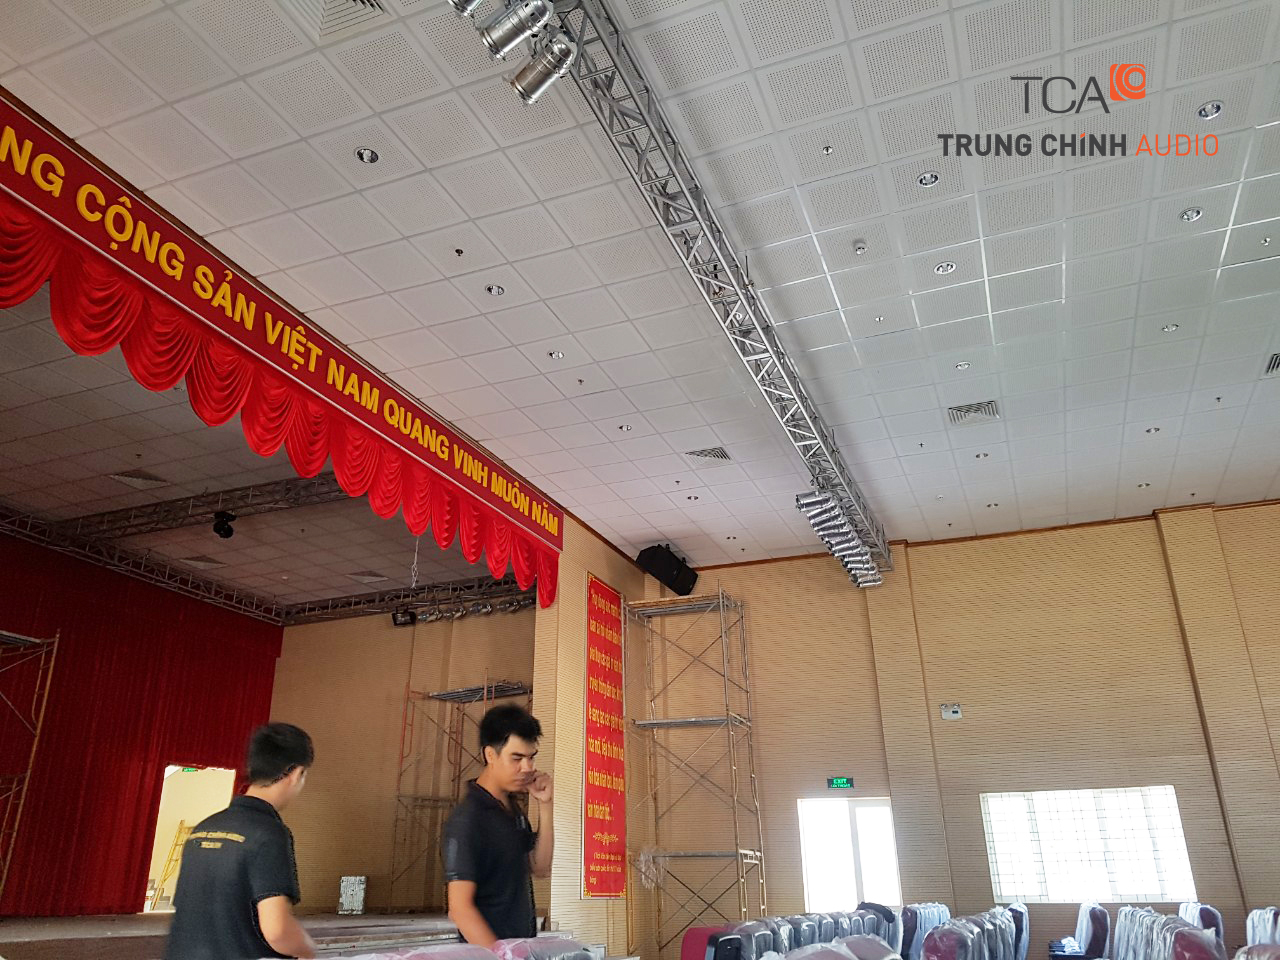 Lắp đặt hệ thống âm thanh ánh sáng dành cho hội trường nhà văn hóa giá rẻ nhất tại Hà Nội